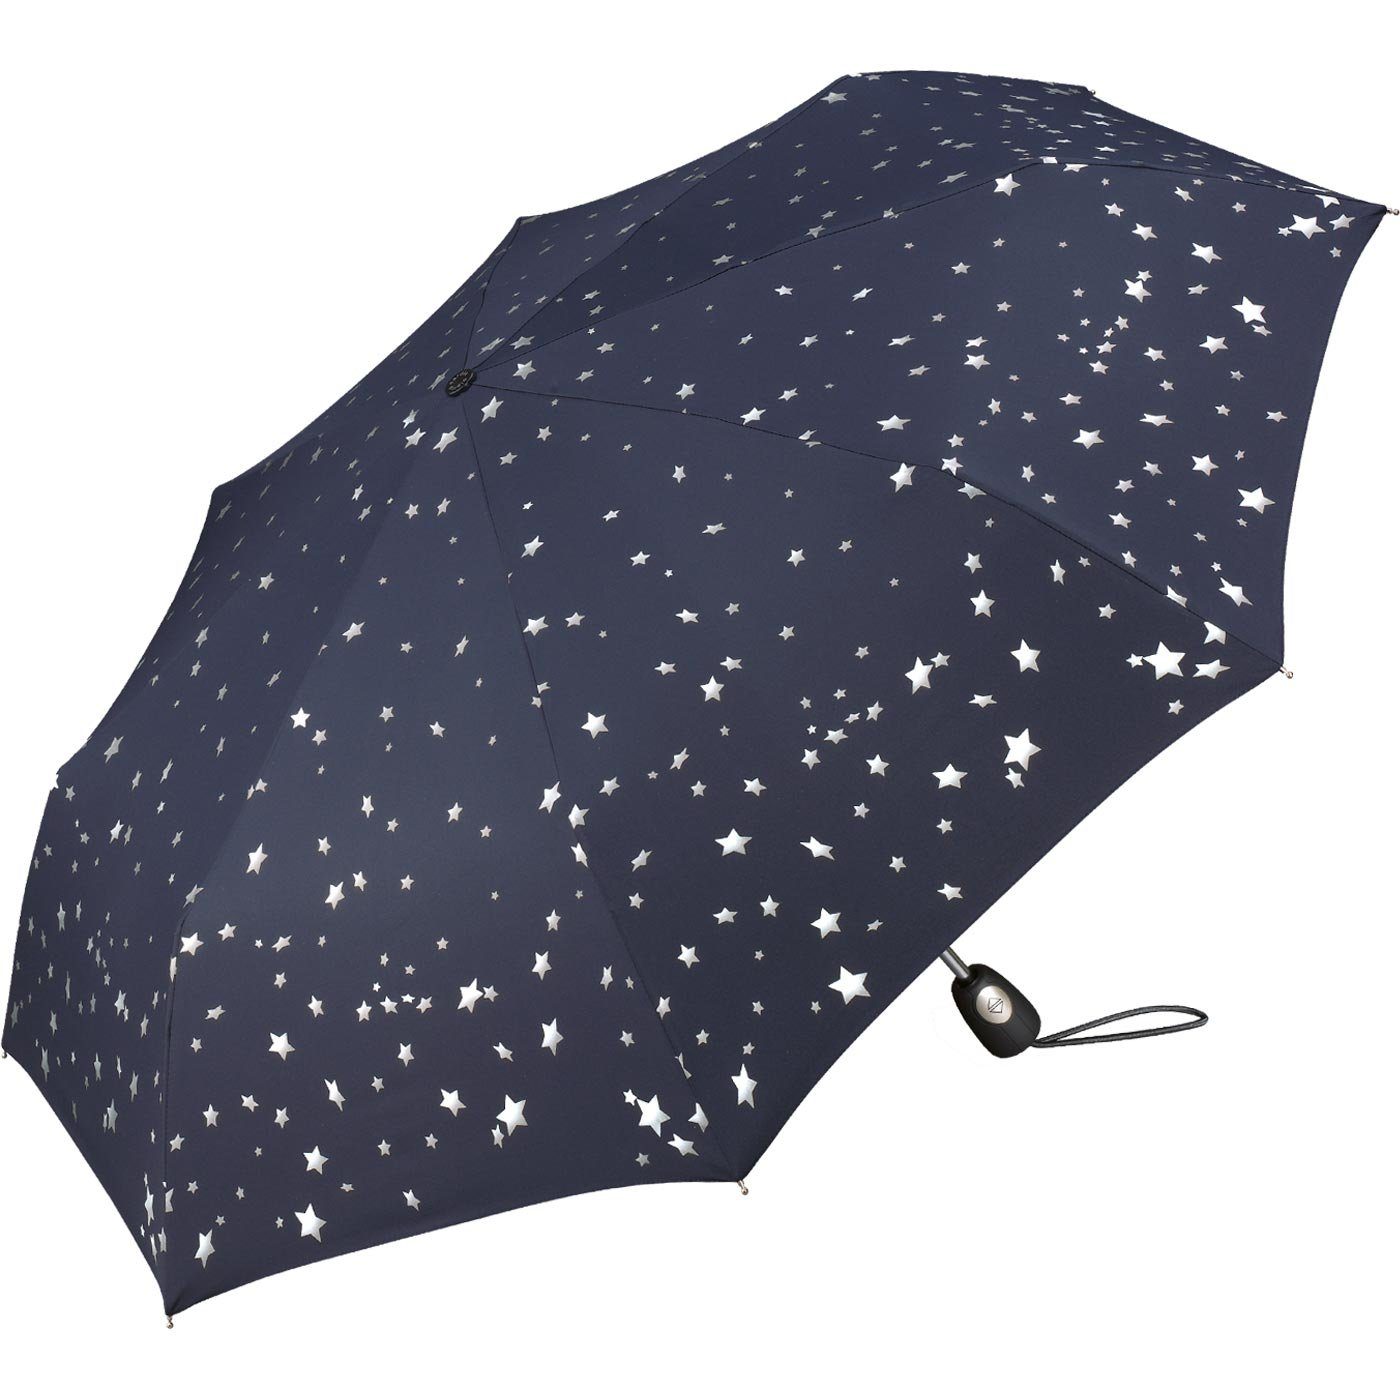 Pierre Cardin in verspieltem schöner mit Design Auf-Zu-Automatik, Sterne Taschenregenschirm blau-silber Damen-Regenschirm traumhafte